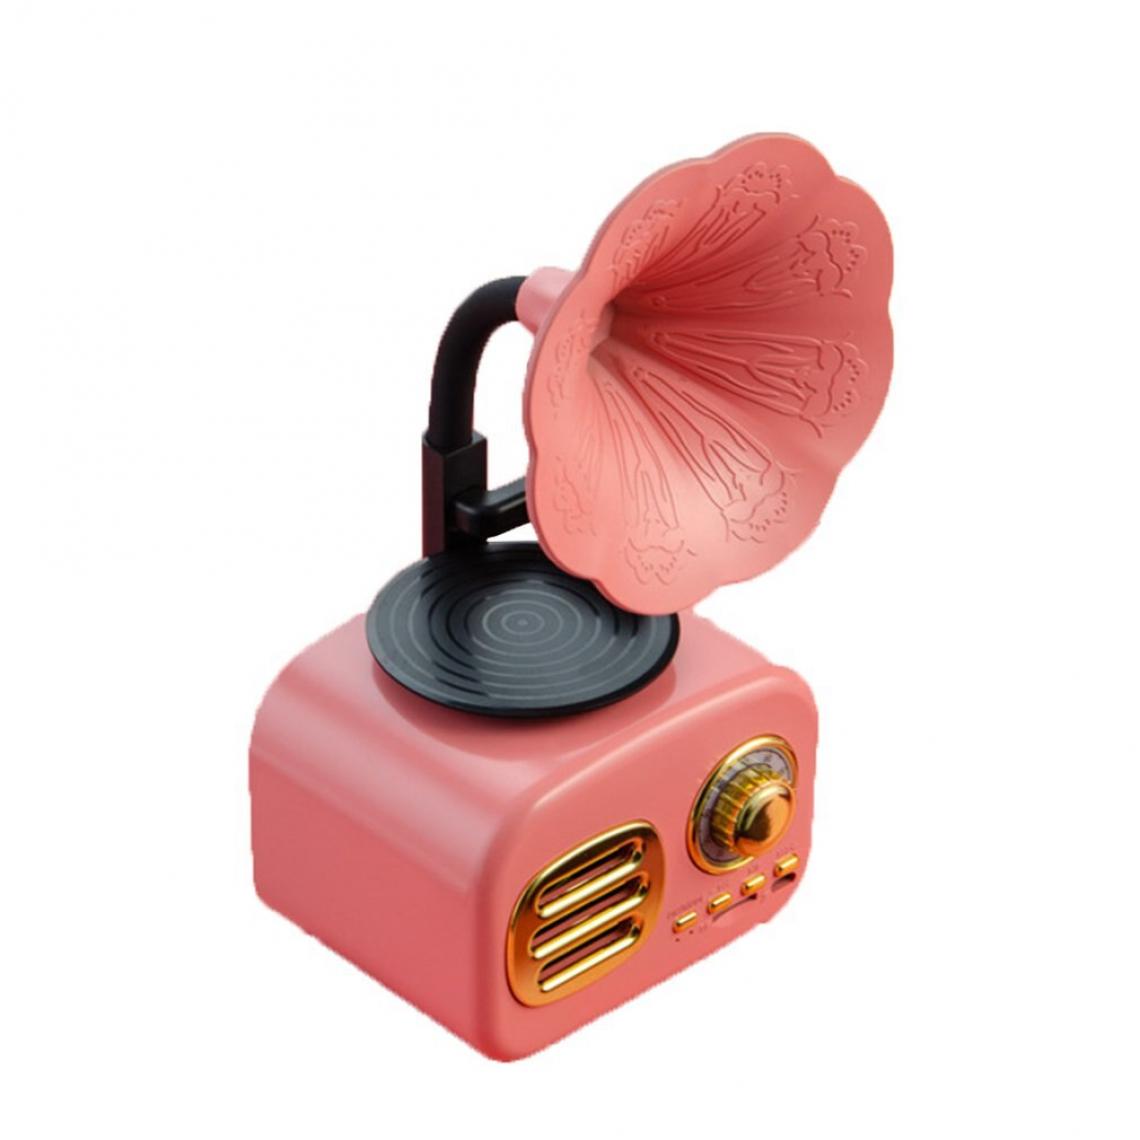 Universal - Haut-parleur sans fil rétro Cadeau créatif Mini subwoofer extérieur Téléphone mobile Radio Musique Instrument Card Audio | Étagère Haut-parleur (rose) - Hauts-parleurs